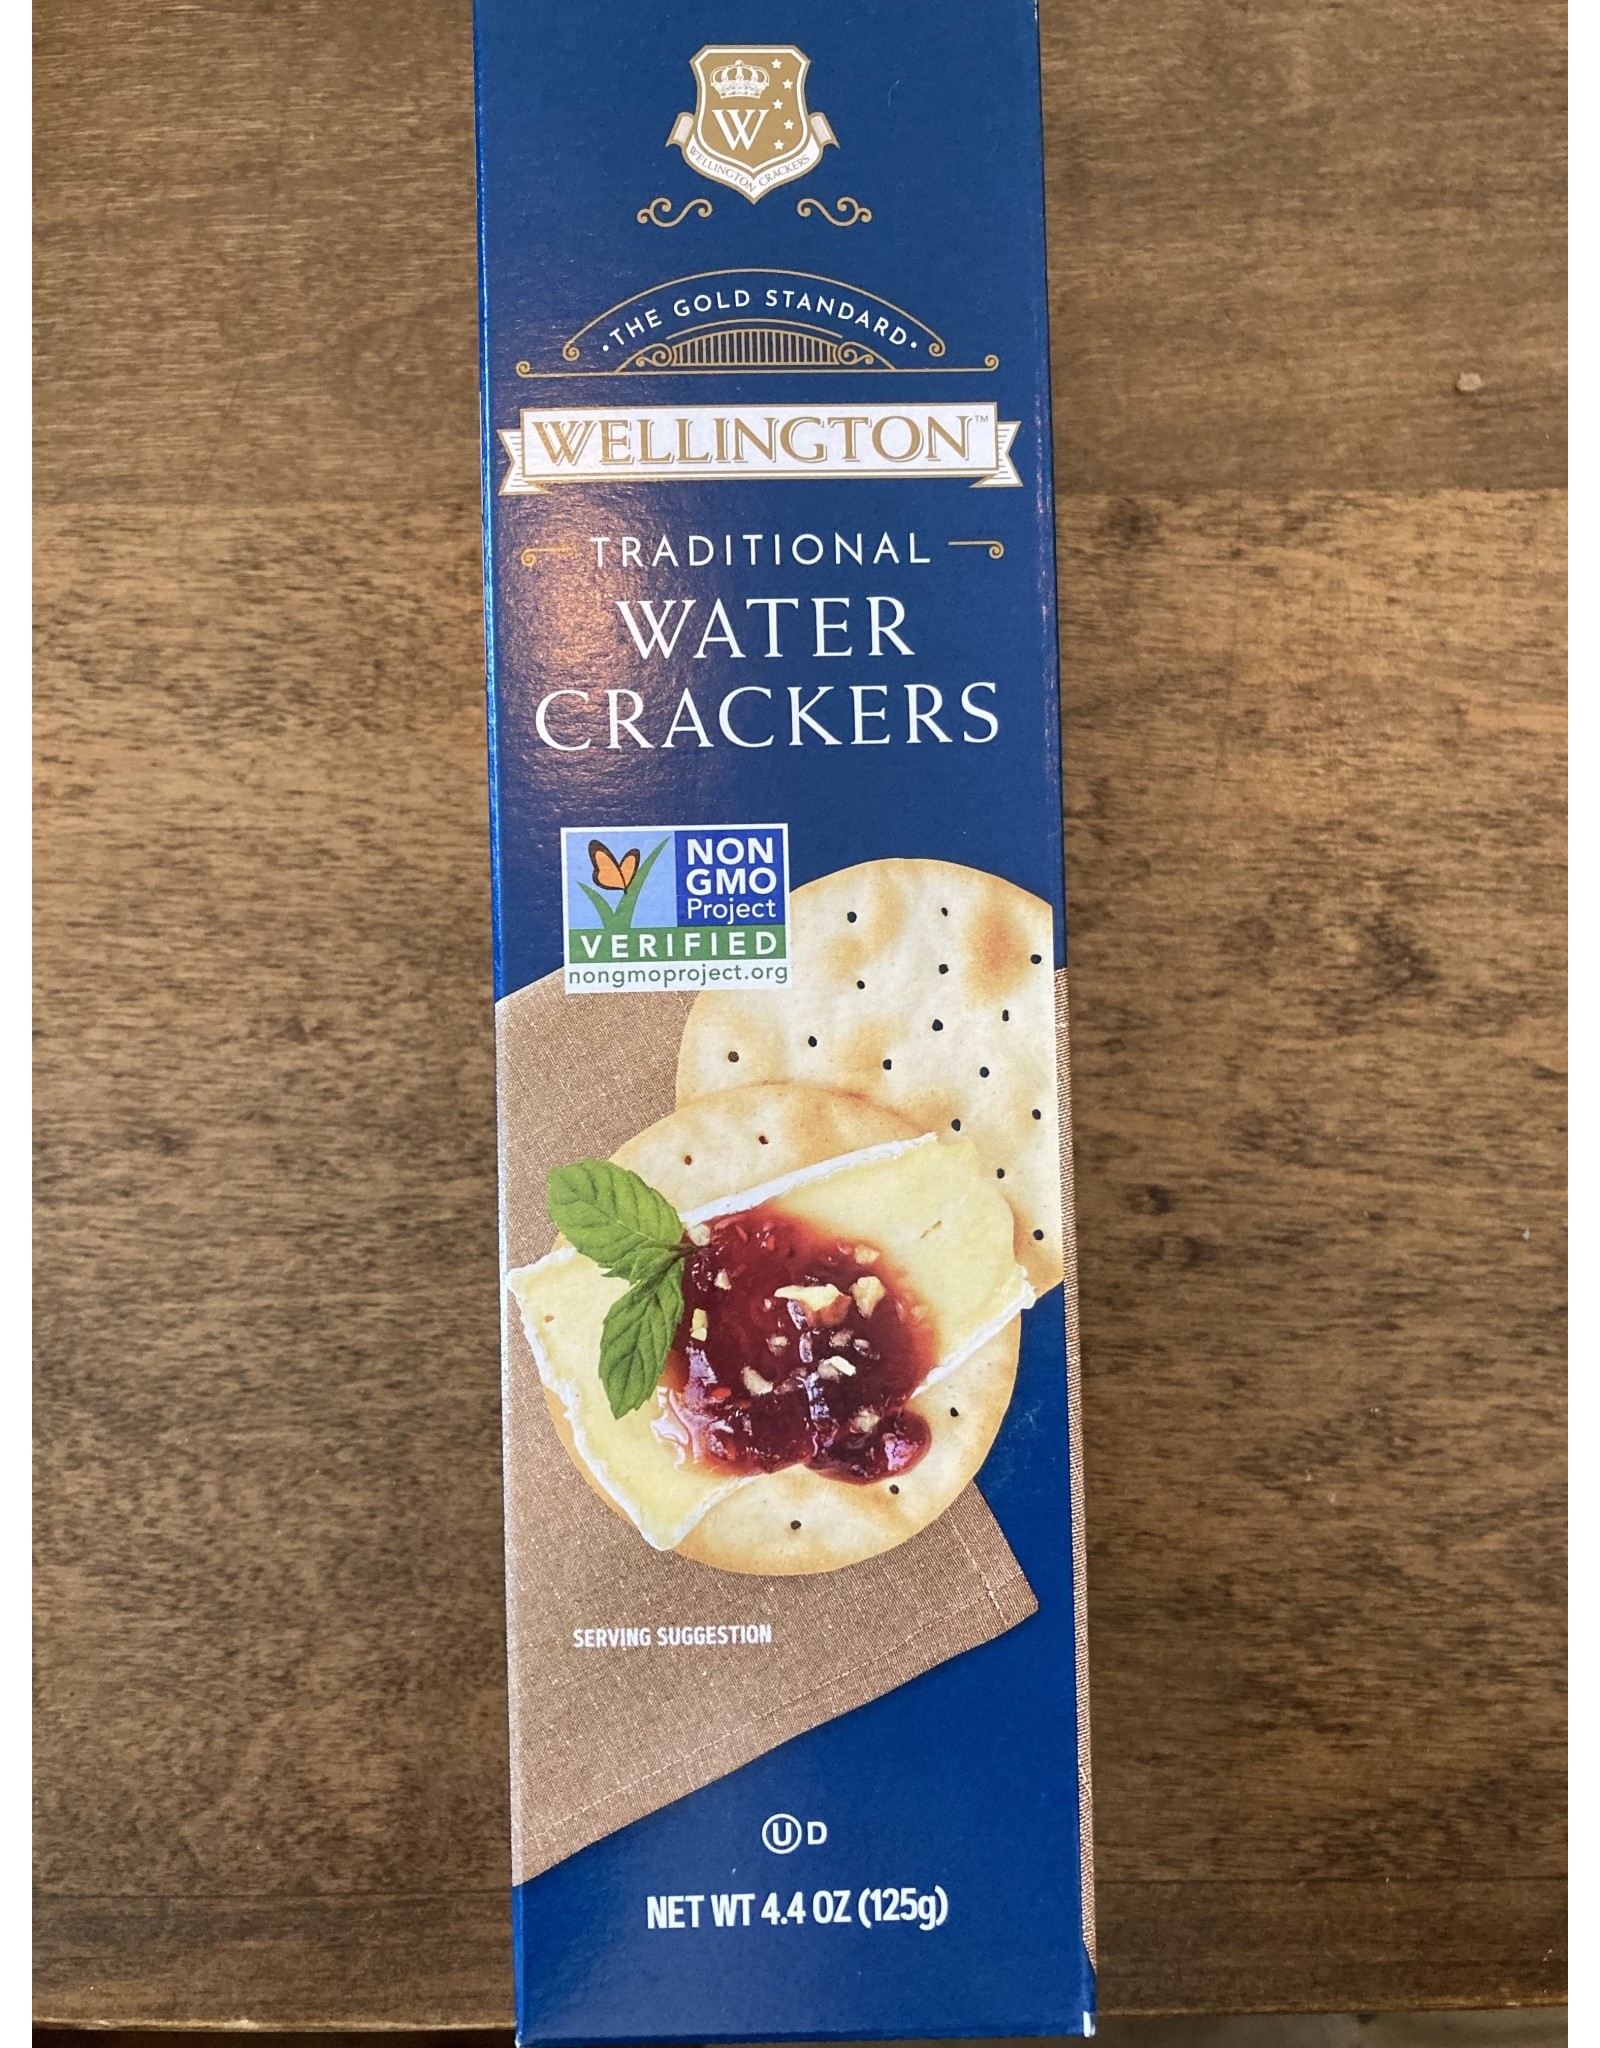 Wellington Wellington Traditional Water Crackers